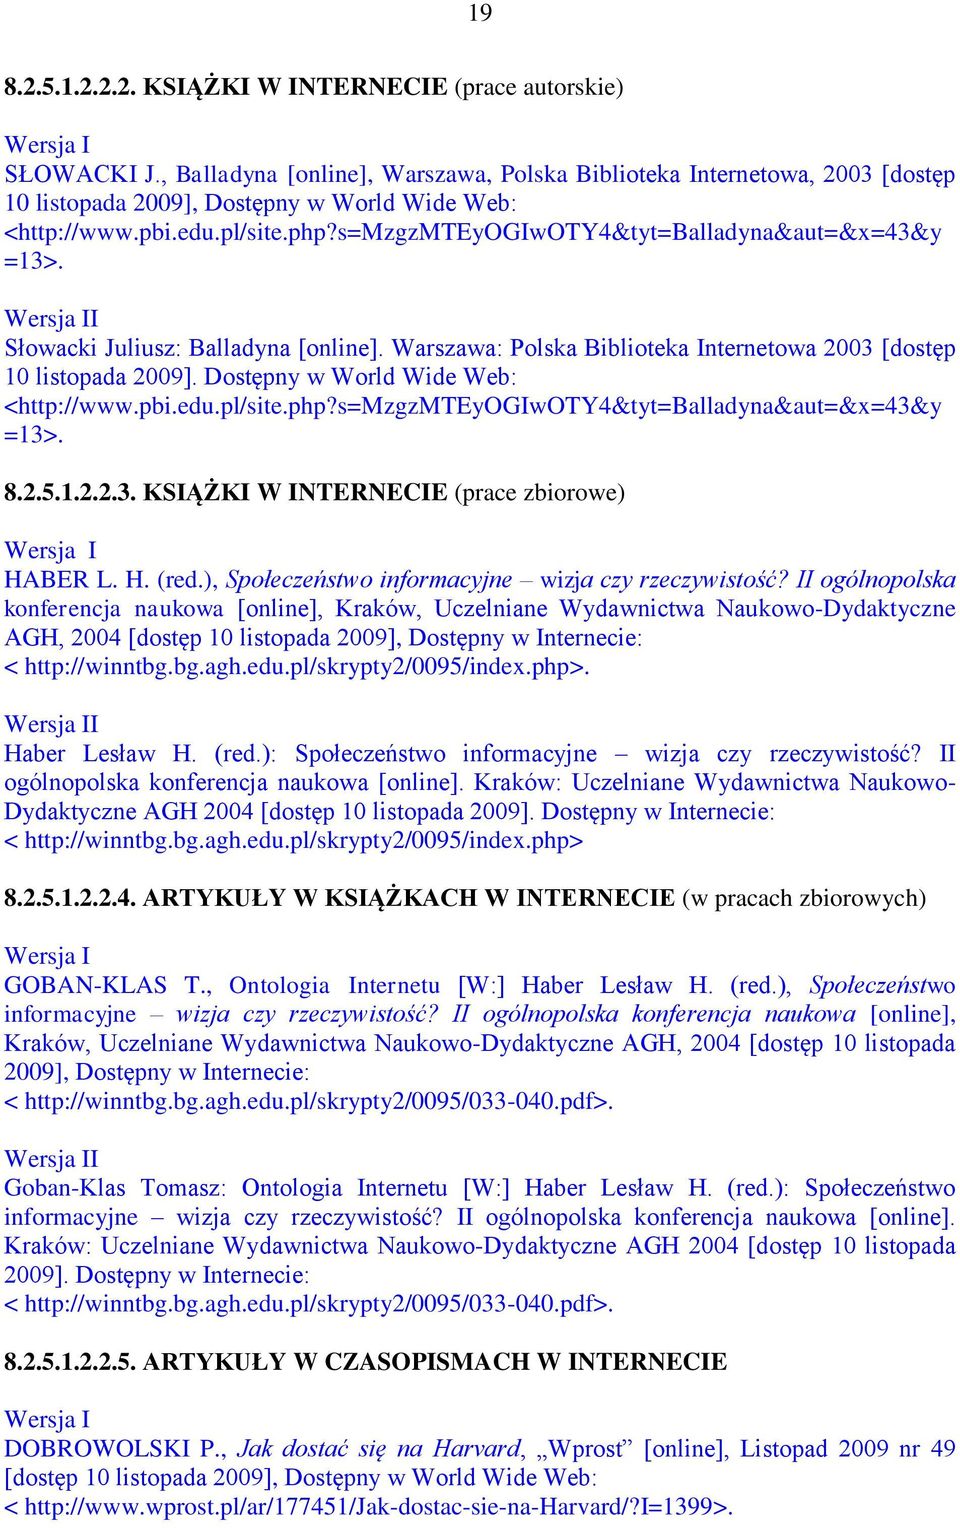 s=mzgzmteyogiwoty4&tyt=balladyna&aut=&x=43&y =13>. Słowacki Juliusz: Balladyna [online]. Warszawa: Polska Biblioteka Internetowa 2003 [dostęp 10 listopada 2009].